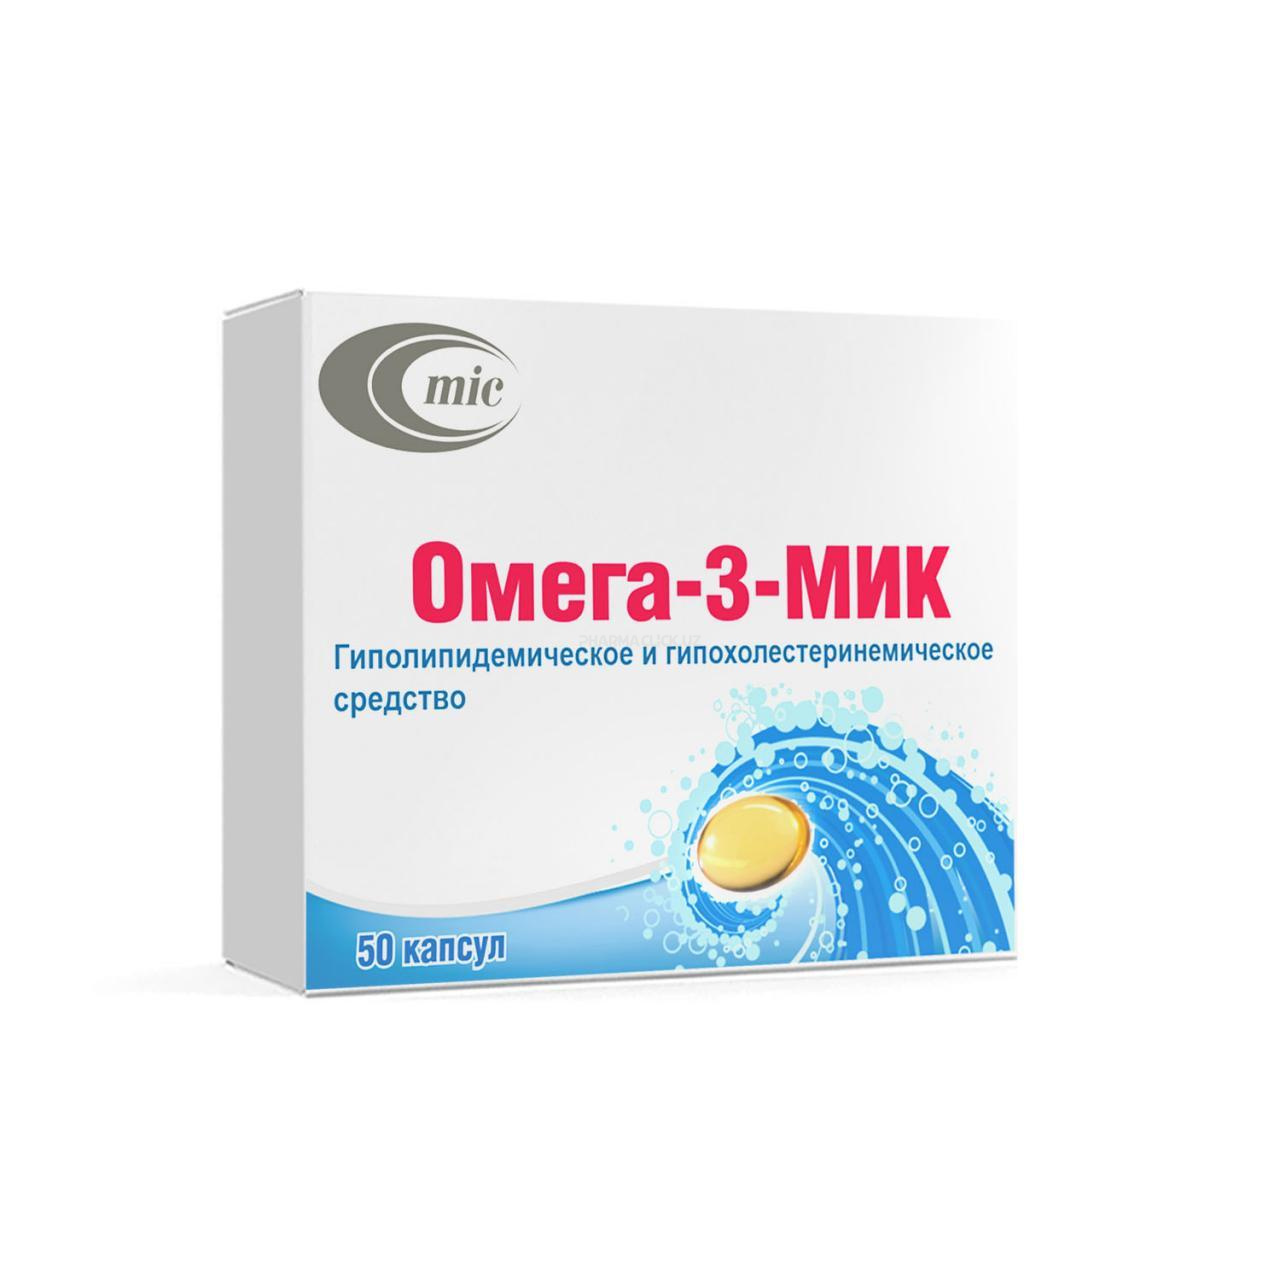 Omega-3-MIK kaps. №50 (Minskinterkaps)